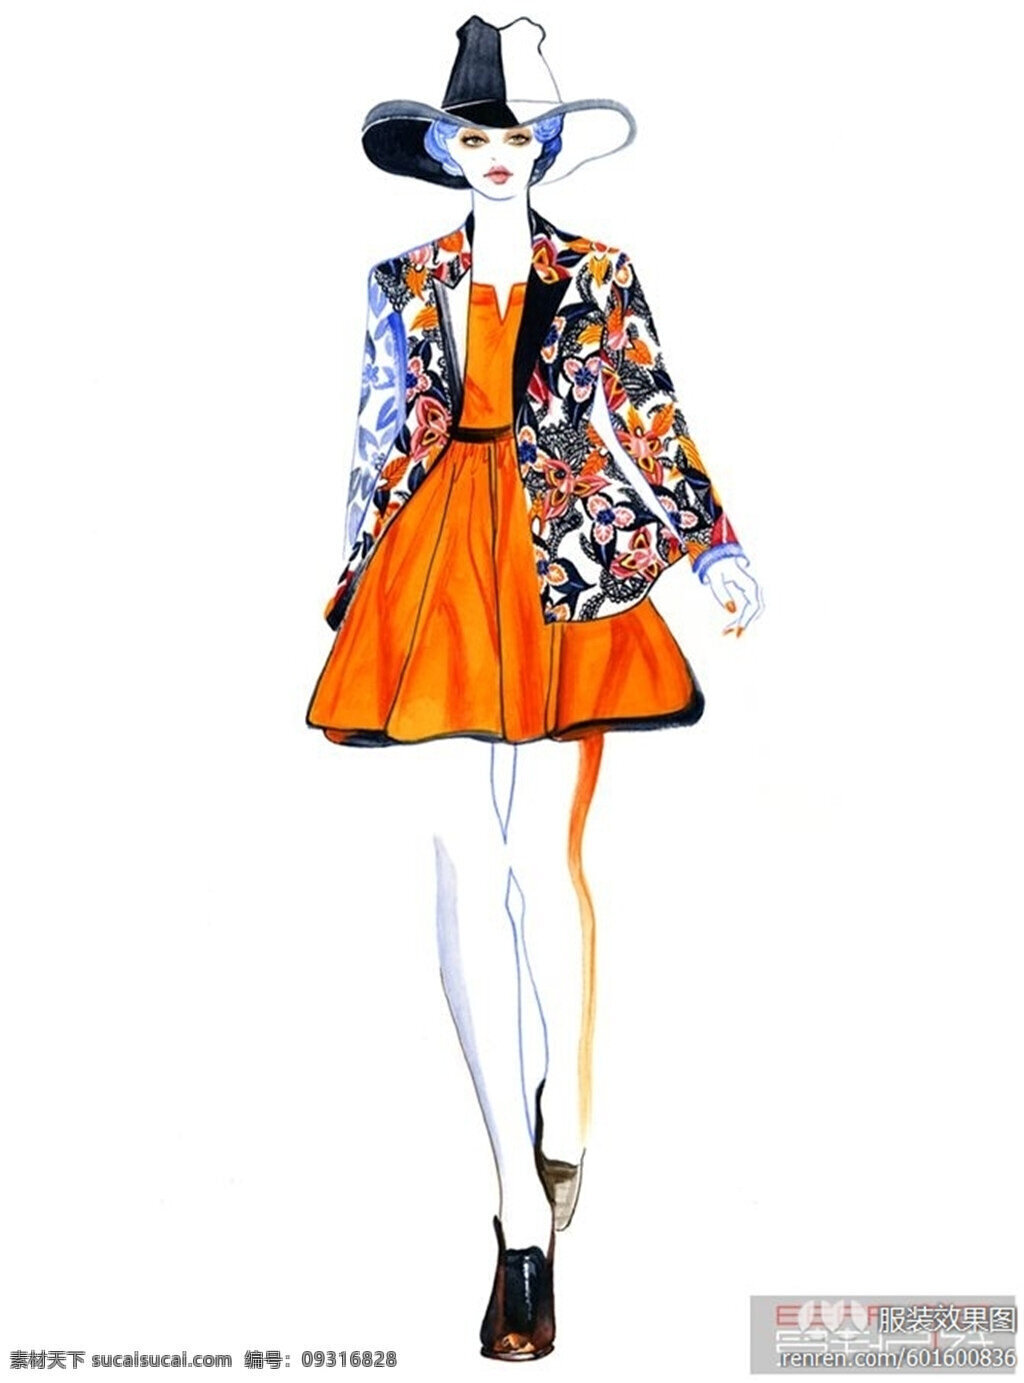 橙色 连衣裙 设计图 服装设计 时尚女装 职业女装 职业装 女装设计 效果图 短裙 衬衫 服装 服装效果图 花朵外套